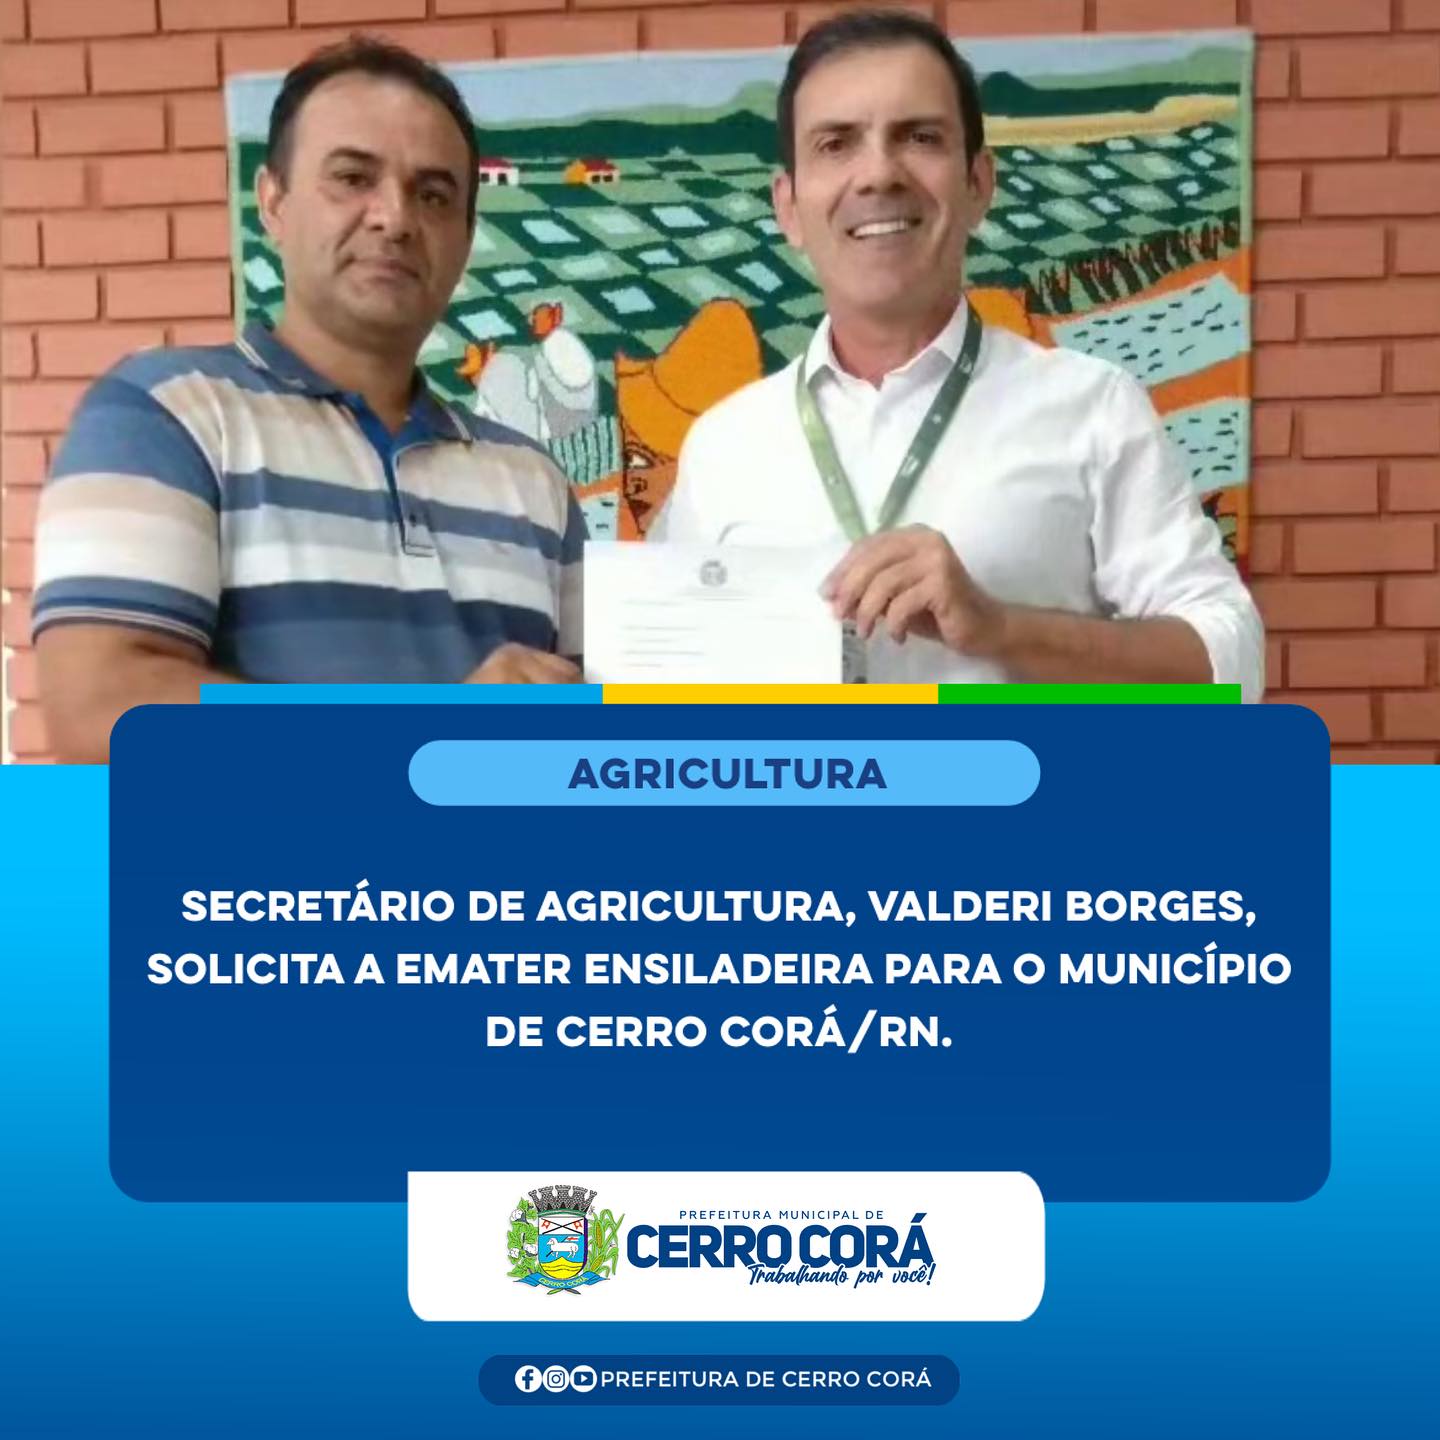 Secretário de agricultura solicita ensiladeira para o Município de Cerro Corá/RN.